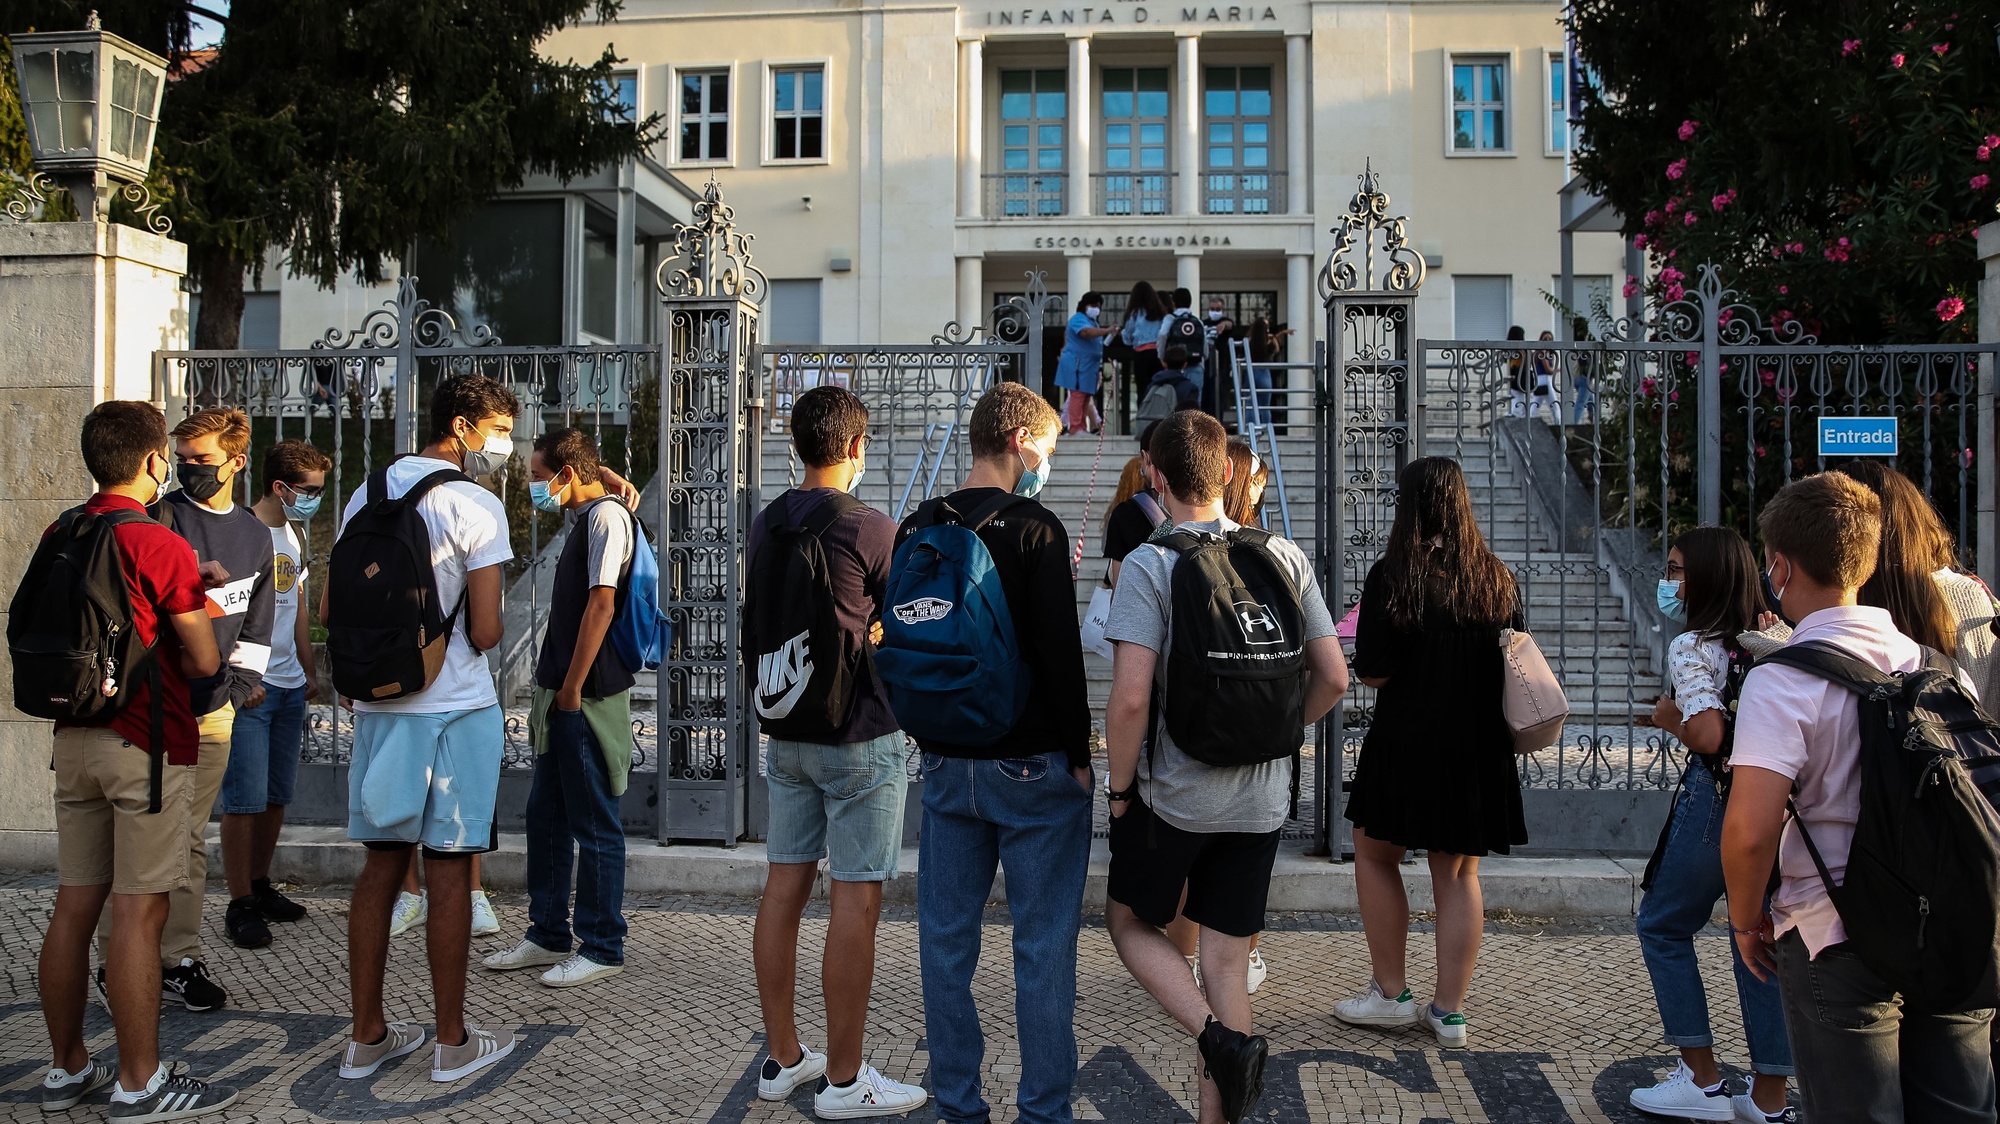 Alunos juntam-se à porta da Escola Secundária Infanta Dona Maria, no dia que assinala o regresso às aulas, com as regras no contexto de pandemia da Covid-19, em Coimbra, 17 de setembro de 2020. PAULO NOVAIS/LUSA